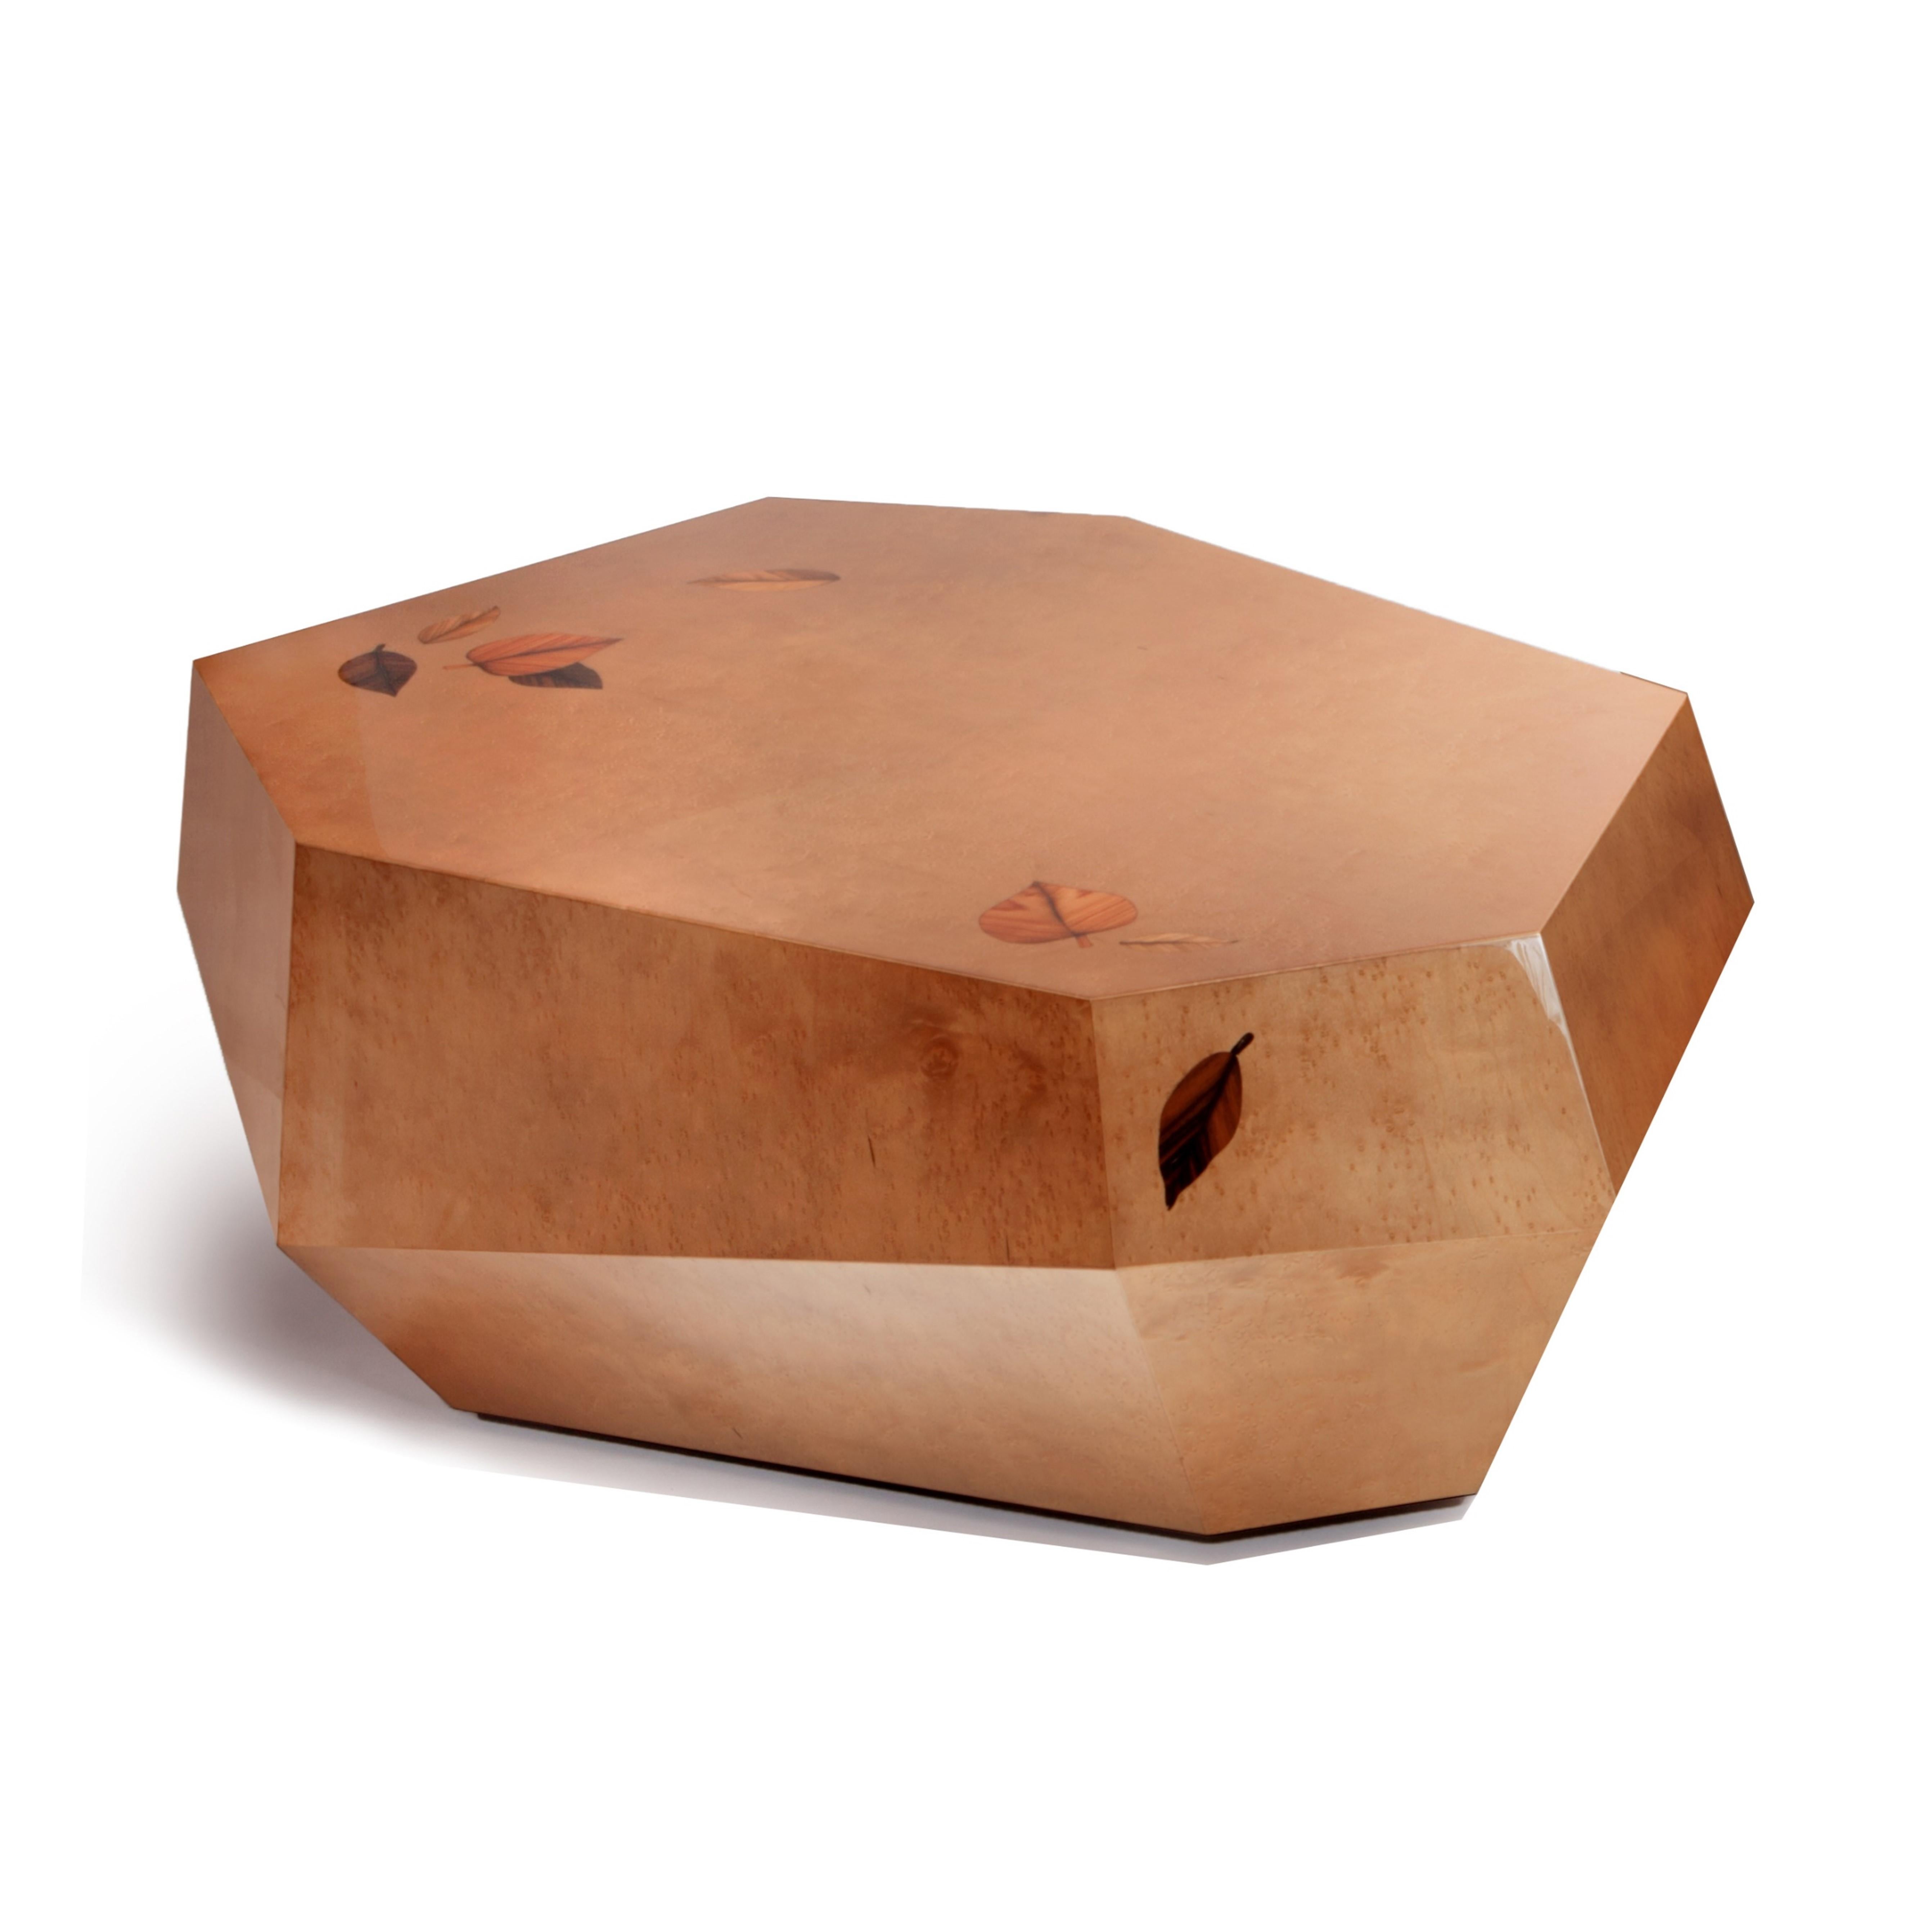 Die unregelmäßigen Formen der robusten Volumen der drei Rocks-Tische sind mit rauchbraunem Vogelaugenholzfurnier in Hochglanzlackierung ausgeführt. Hier wird das Modell des niedrigen Couchtisches vorgestellt. 
Die kleinen gepunkteten Knötchen